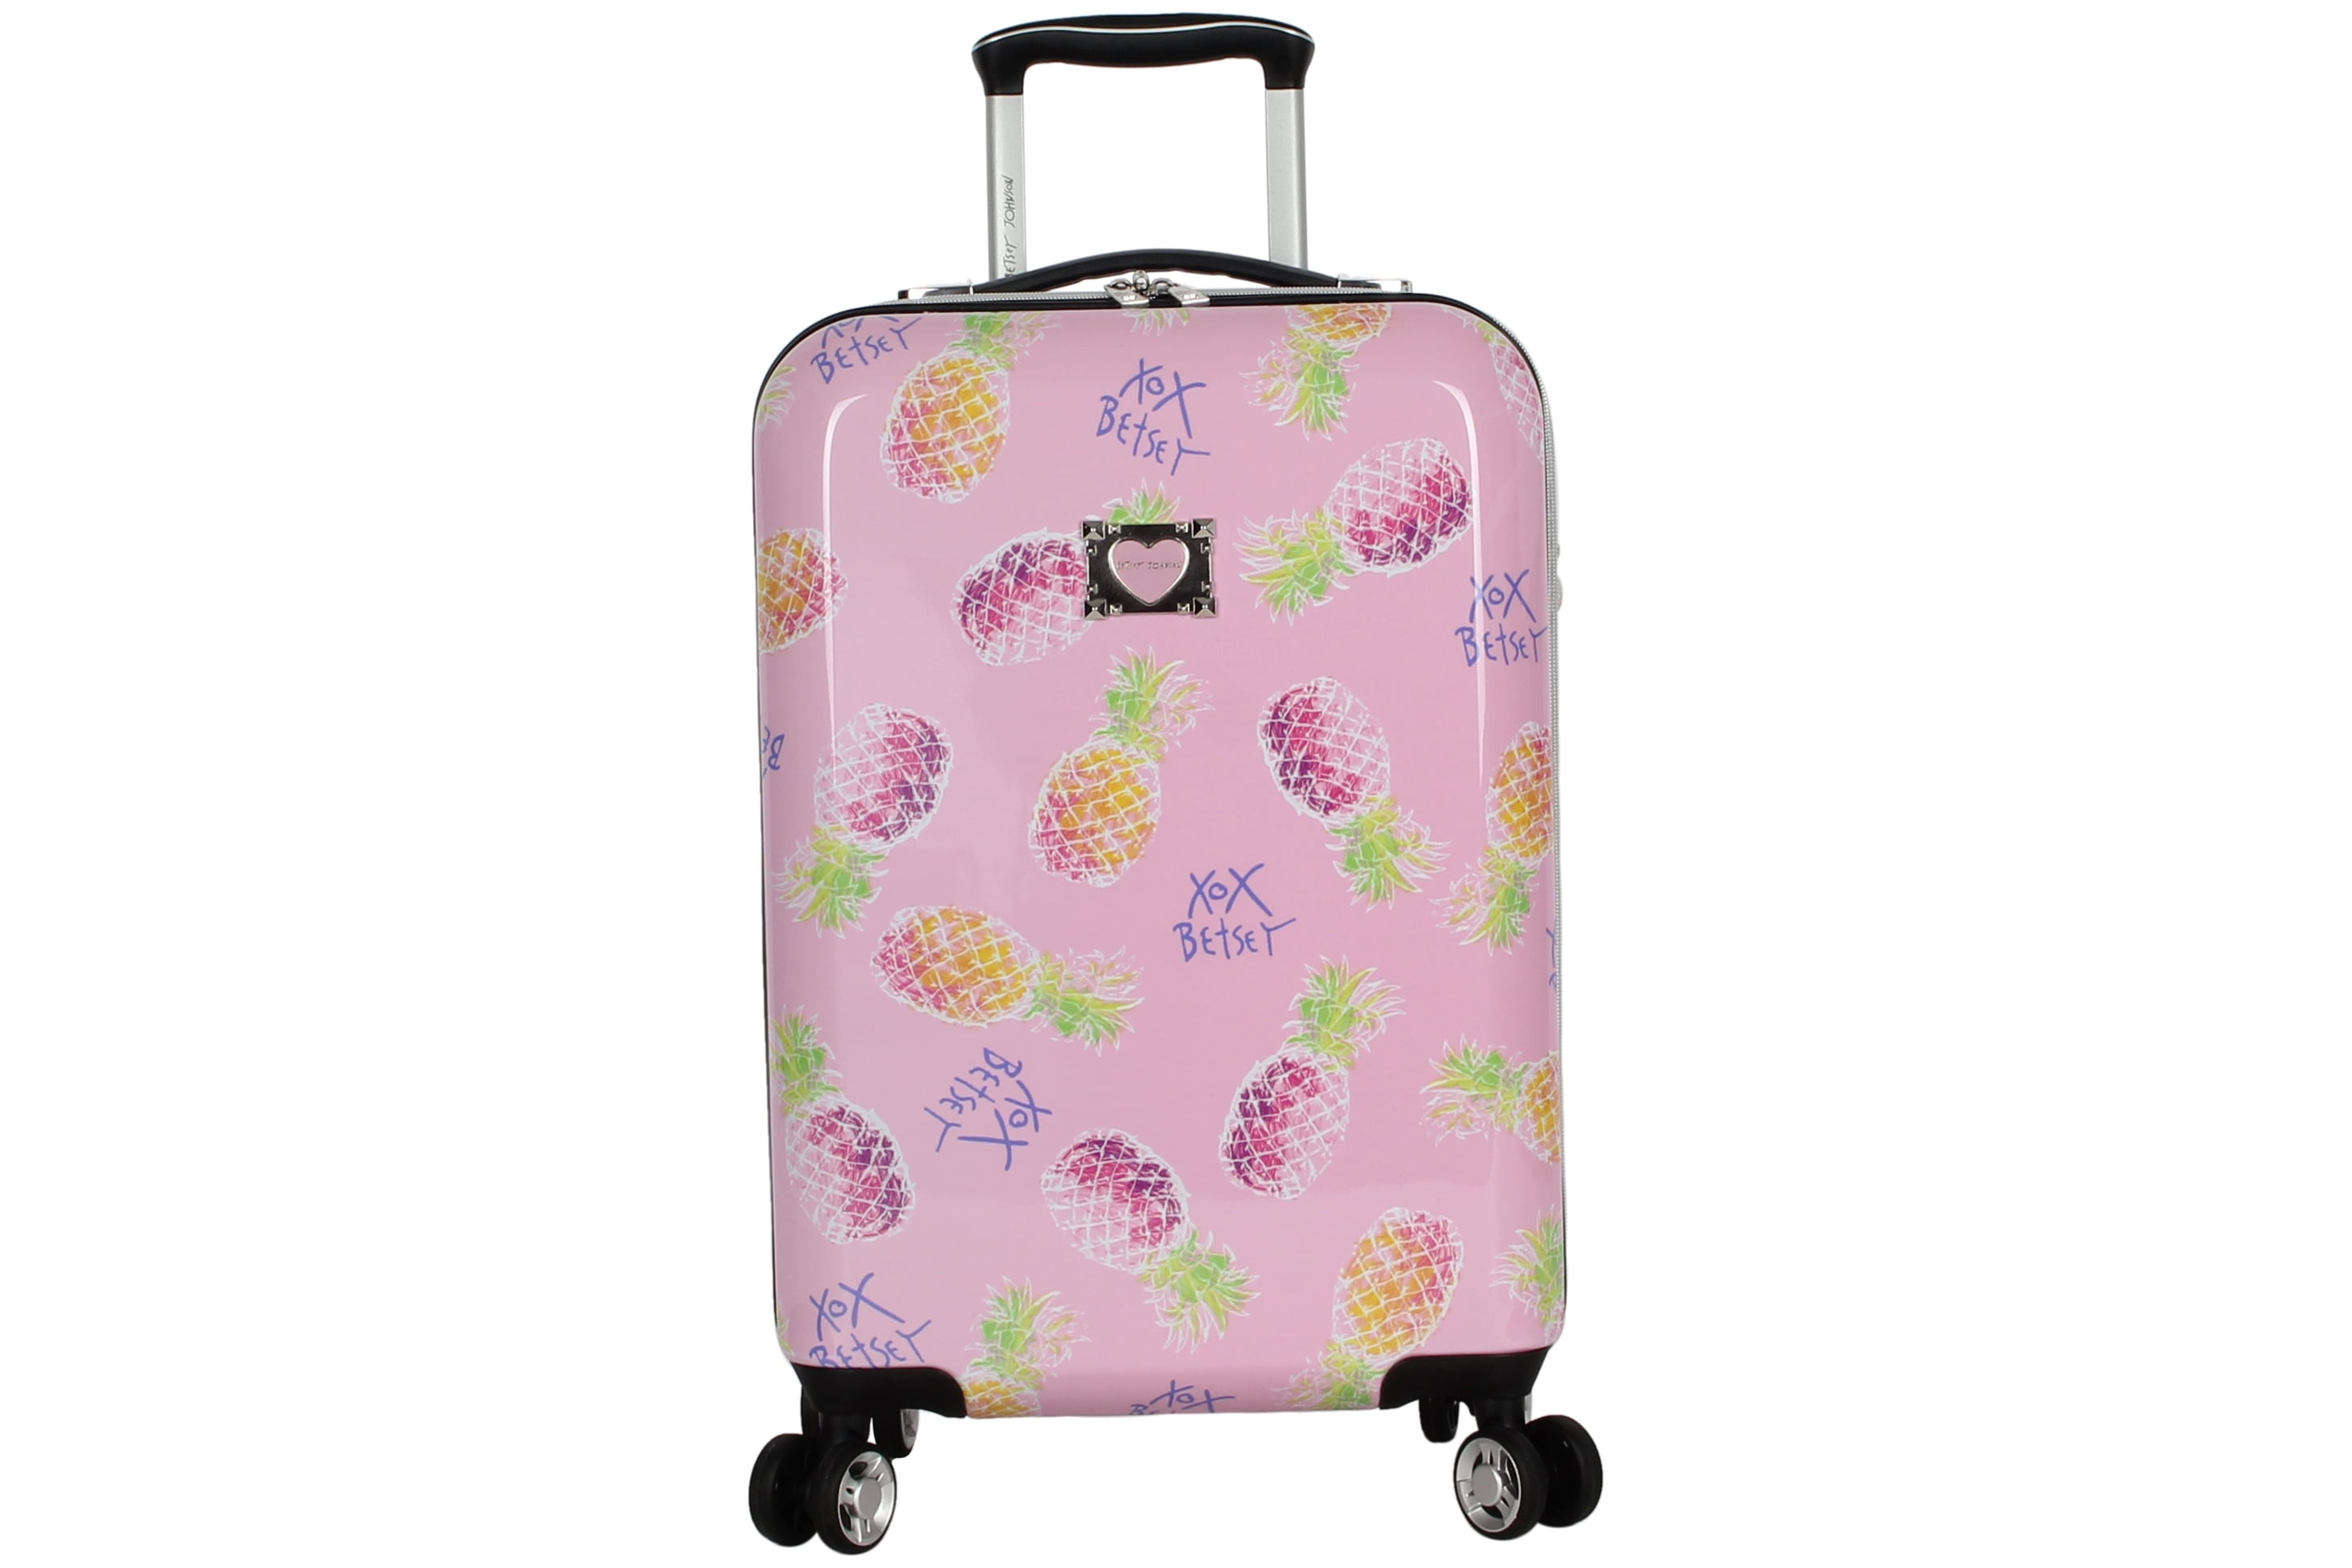 Betsey Johnson Designer 20 inch Carry on Luggage Hardside Luggage 